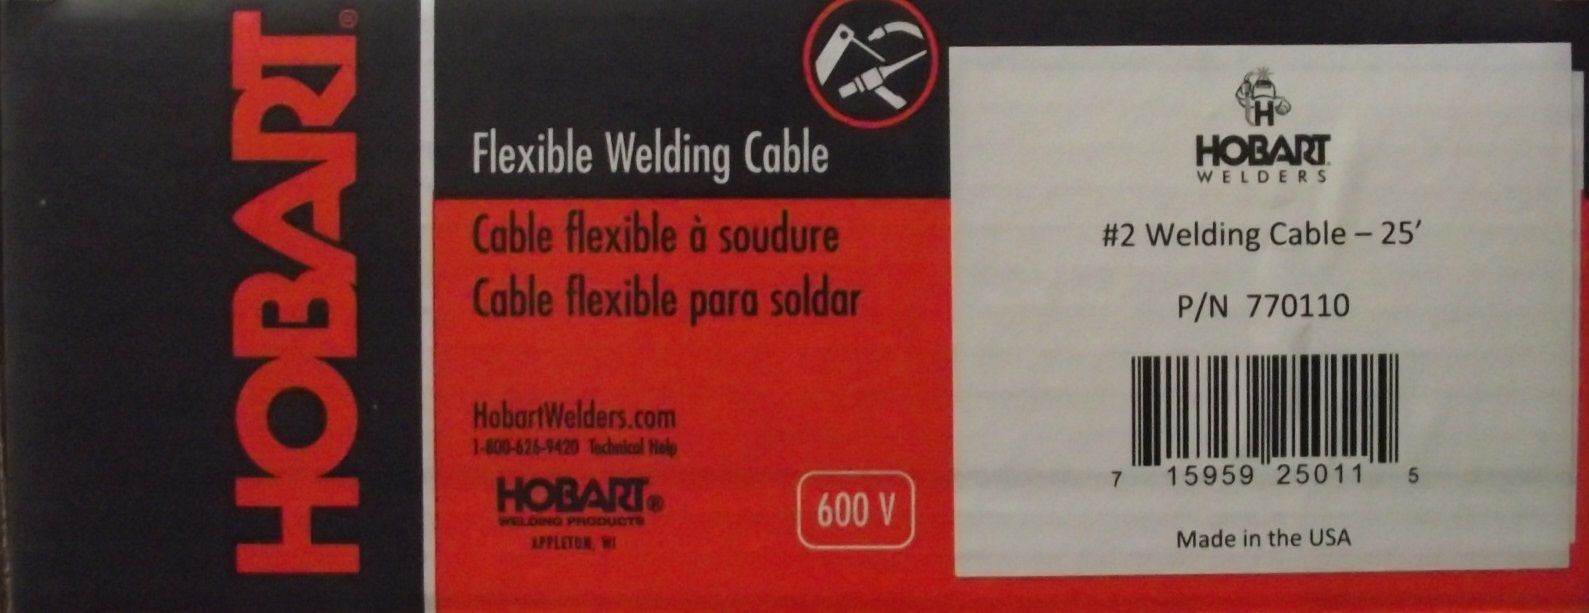 Hobart 770110 Welding Cable Welding #2 25-Feet Bulk USA